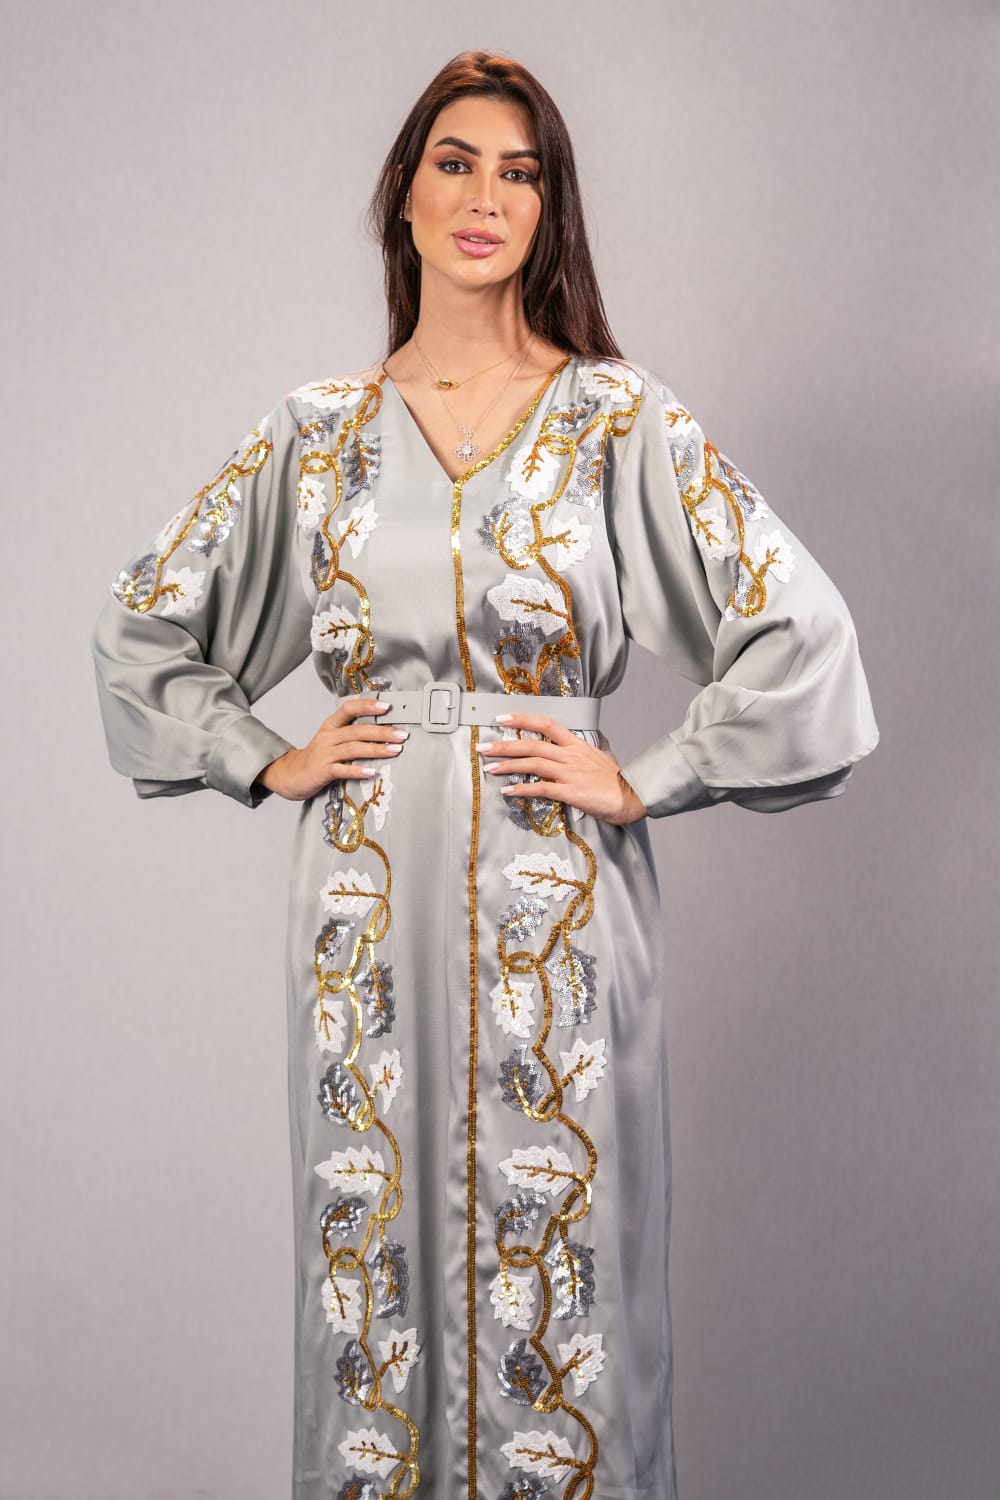 فستان رمادي بزخرفة شعبية مصنوع يدوياً على شكل أوراق شجر وأكمام فضفاضة، مع حزام